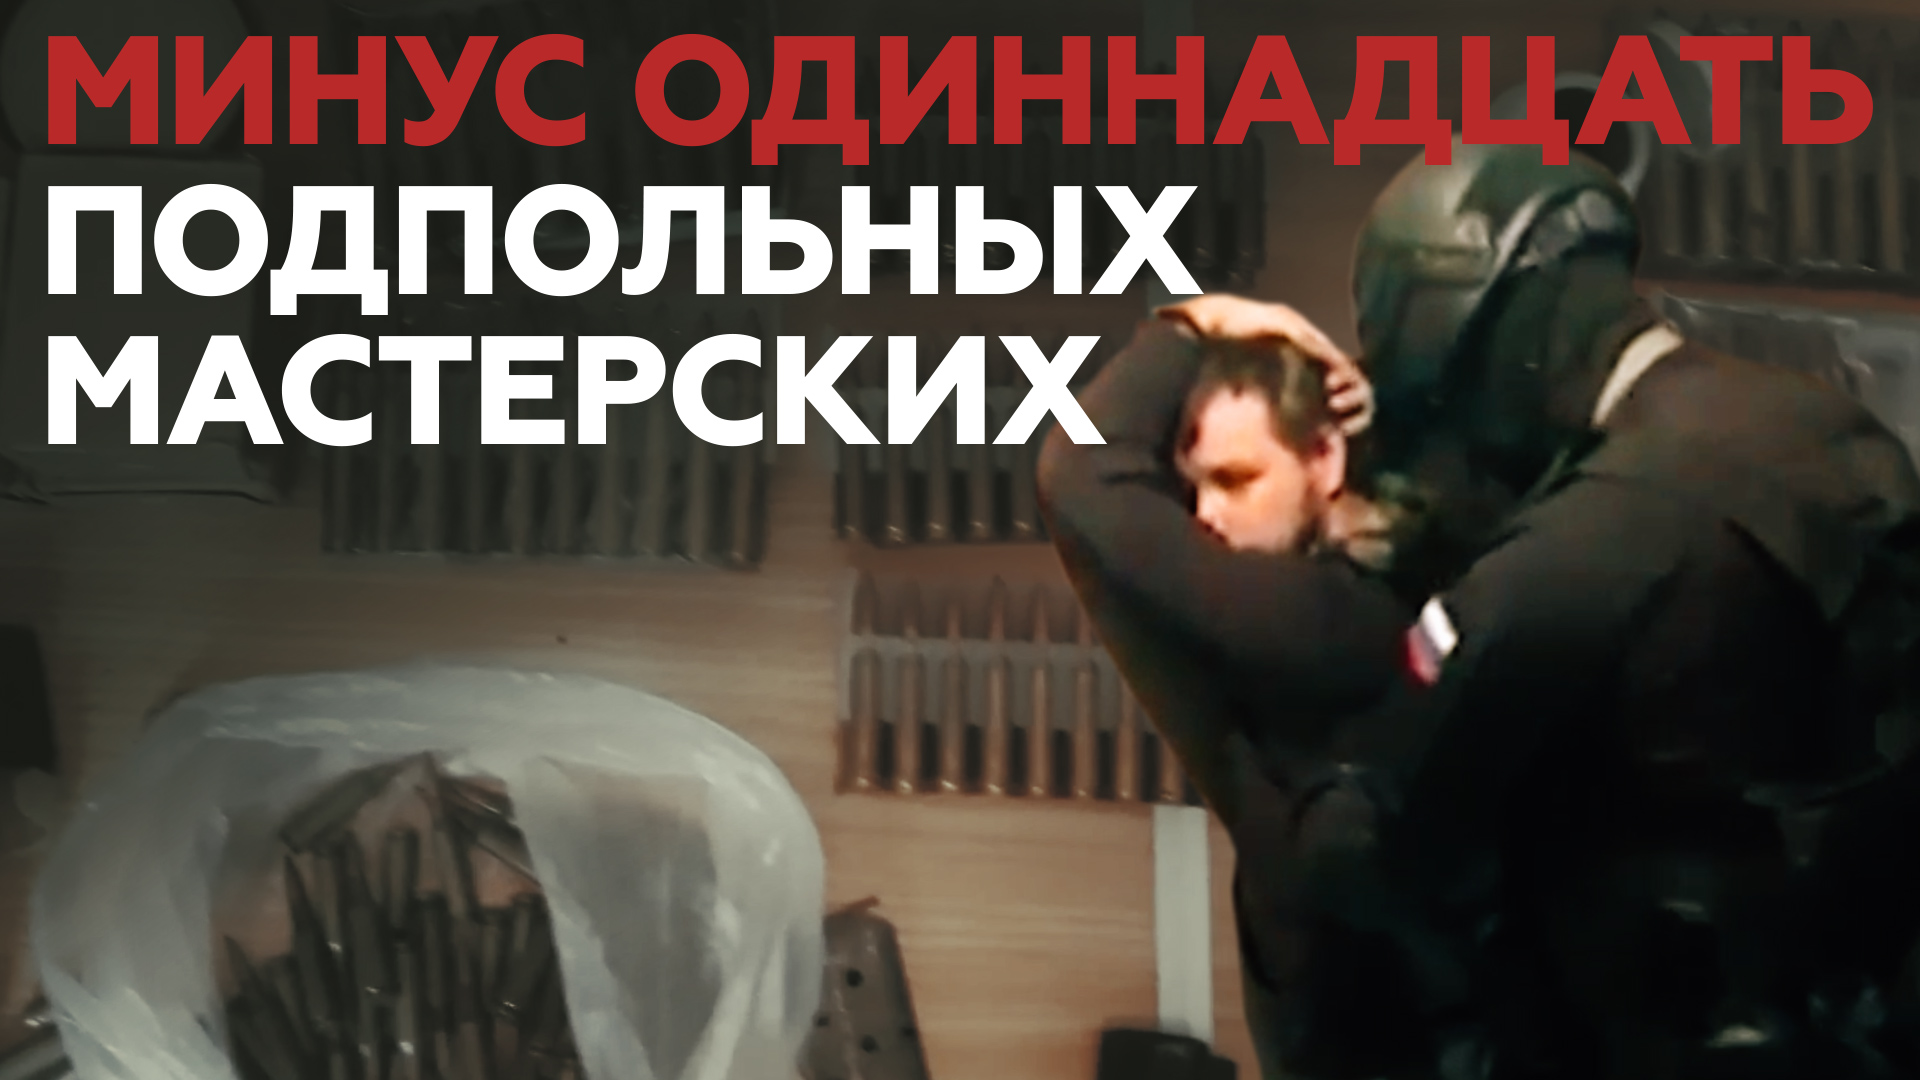 ФСБ закрыла 11 подпольных оружейных мастерских в российских регионах